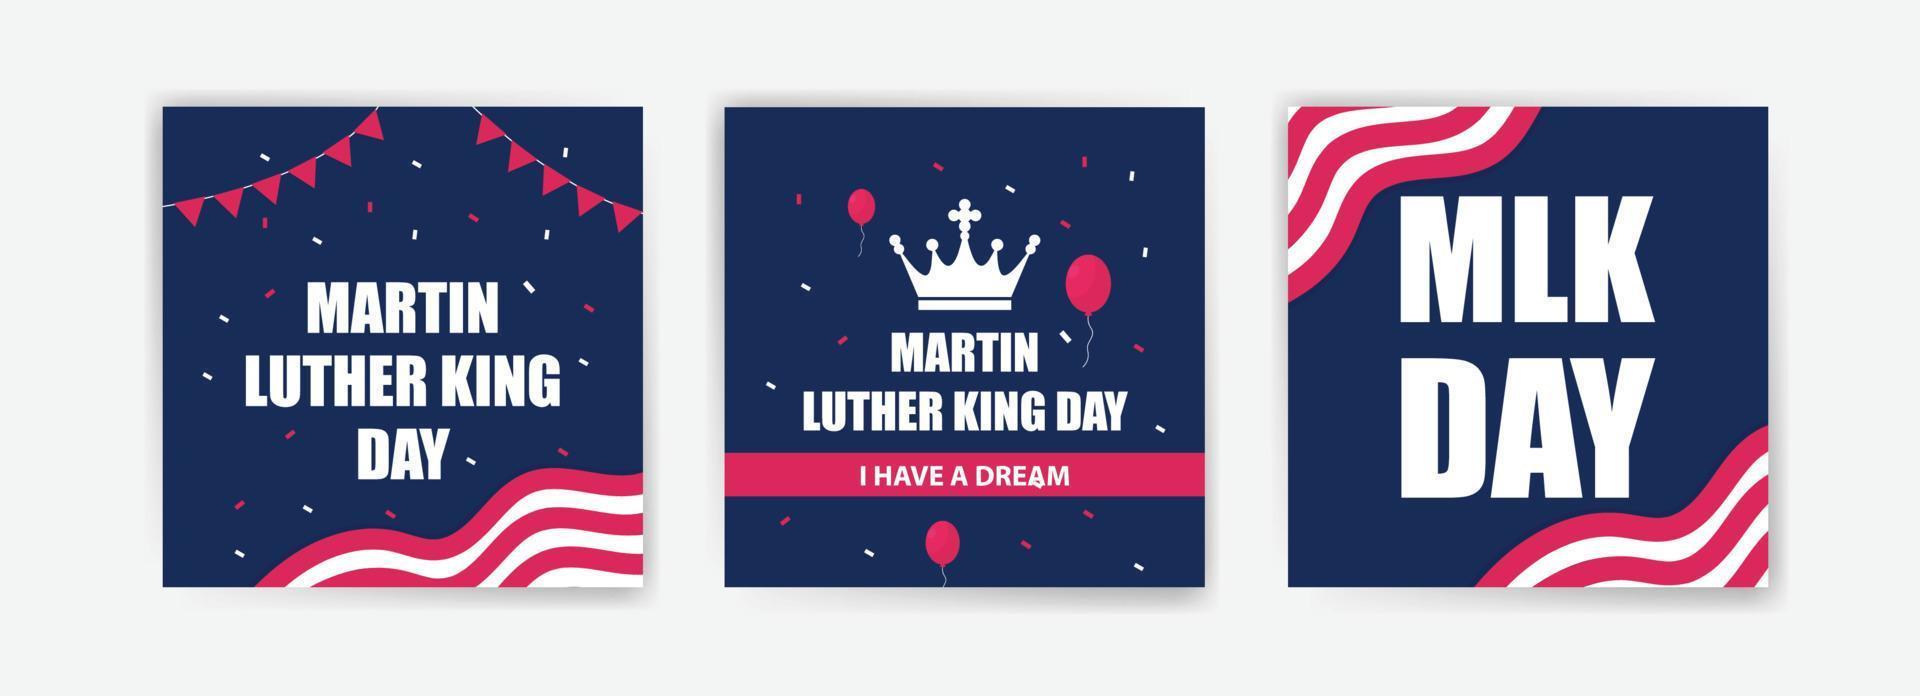 Martin Luther King Day célèbre les cartes avec le drapeau national des États-Unis. vecteurs pour cartes, bannières et affiches. vecteur